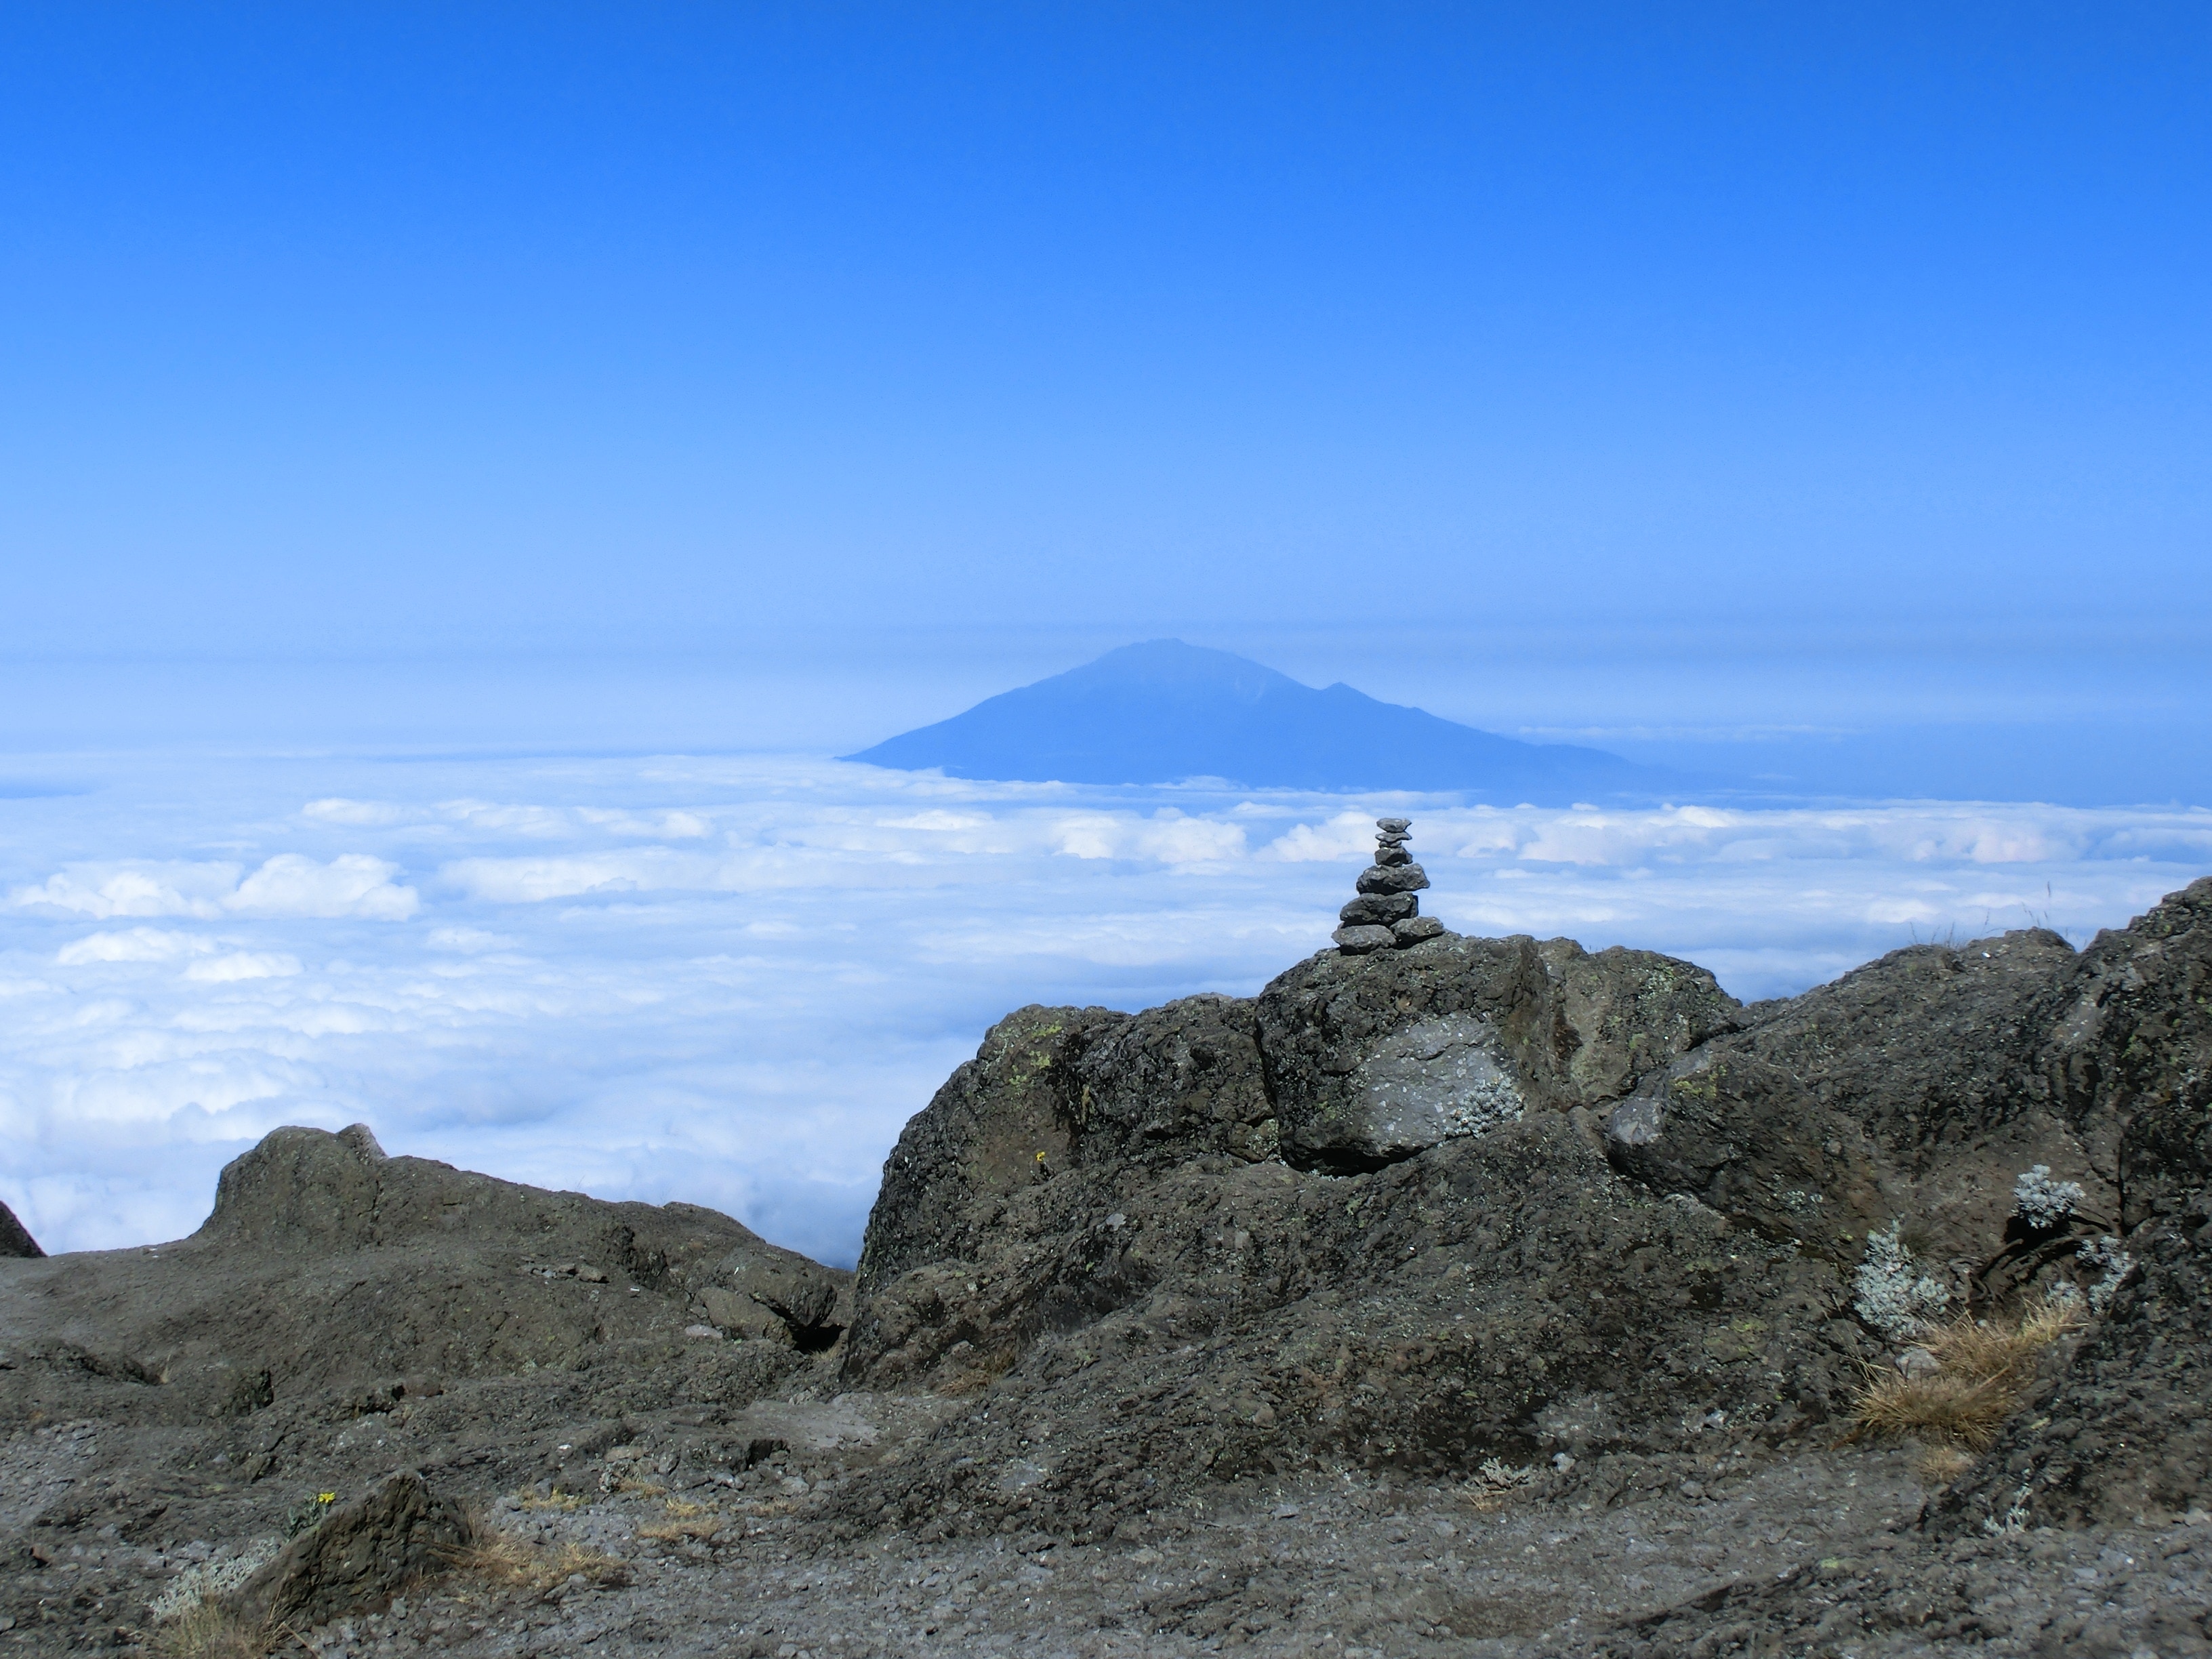 Blick auf den Mount Meru vom oberen Ende der Barranco Wall am Kilimanjaro